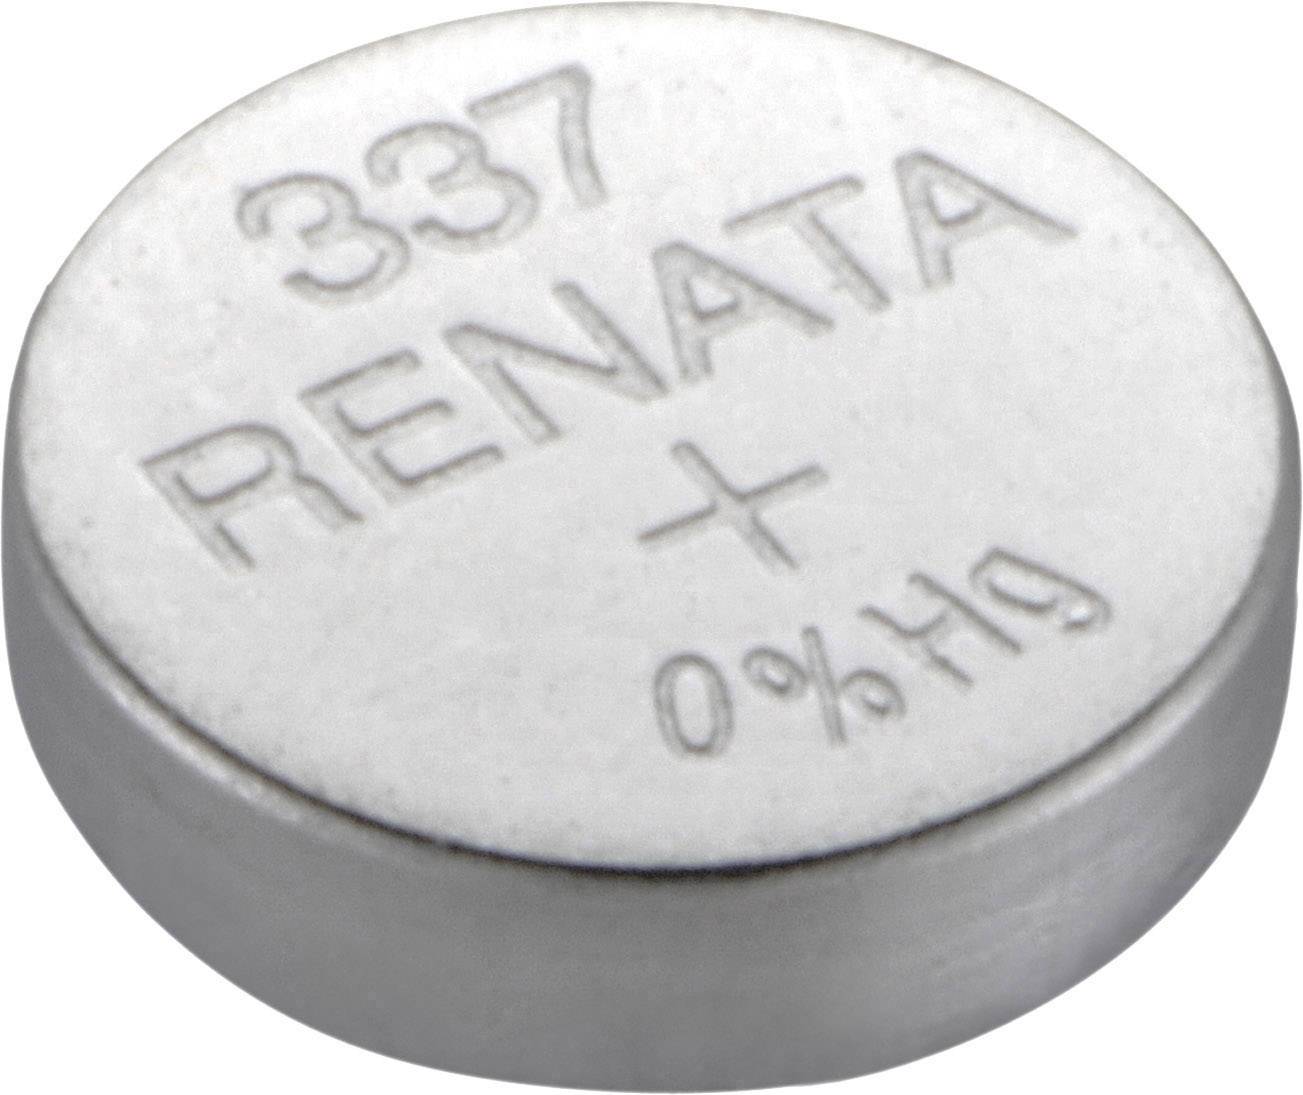 RENATA Knopfzelle 337 Silberoxid Renata SR416 8 mAh 1.55 V 1 St.